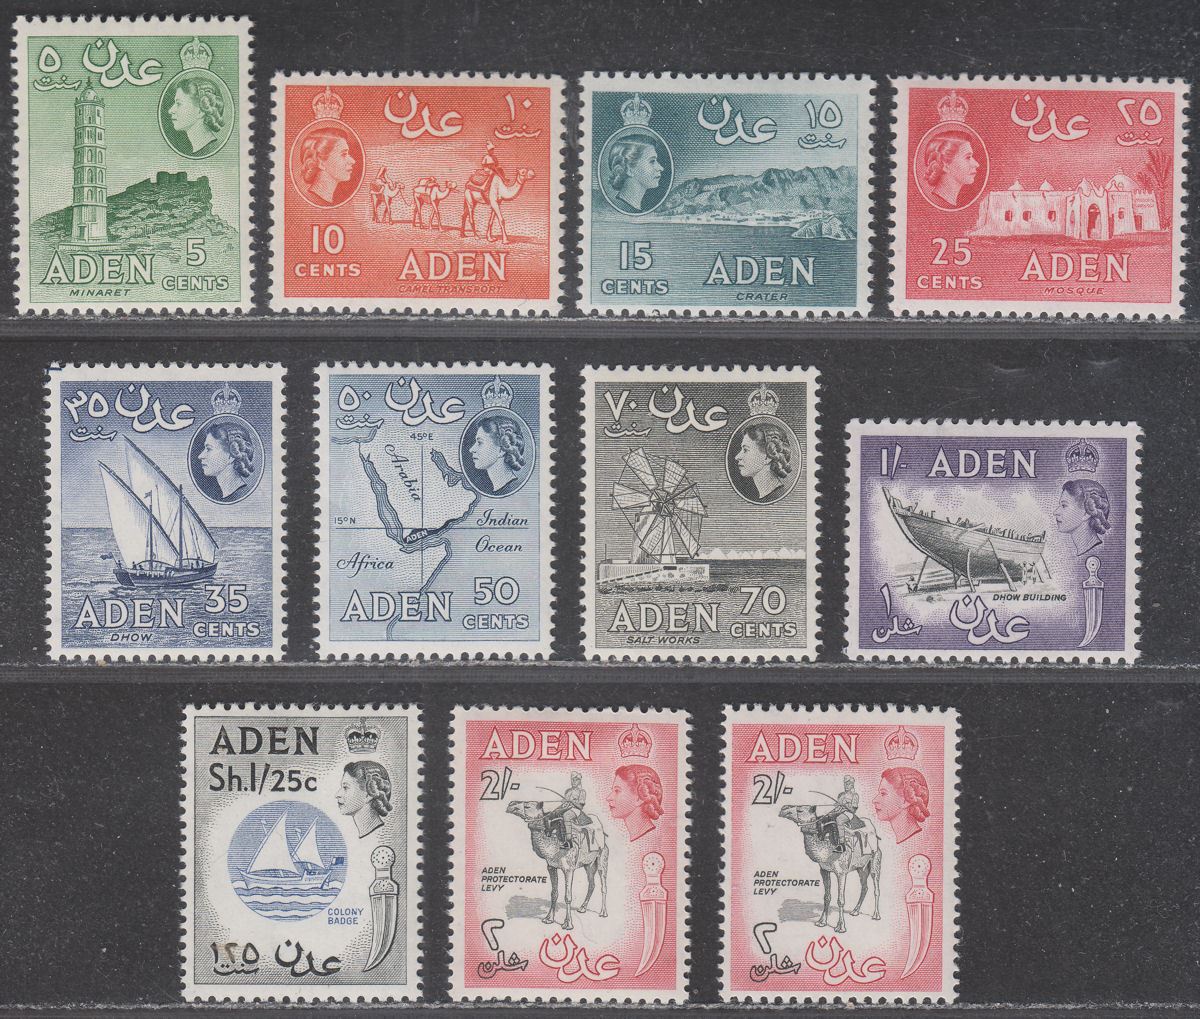 Aden 1964-65 Queen Elizabeth II wmk Block CA Set UM Mint SG77-86 cat £65